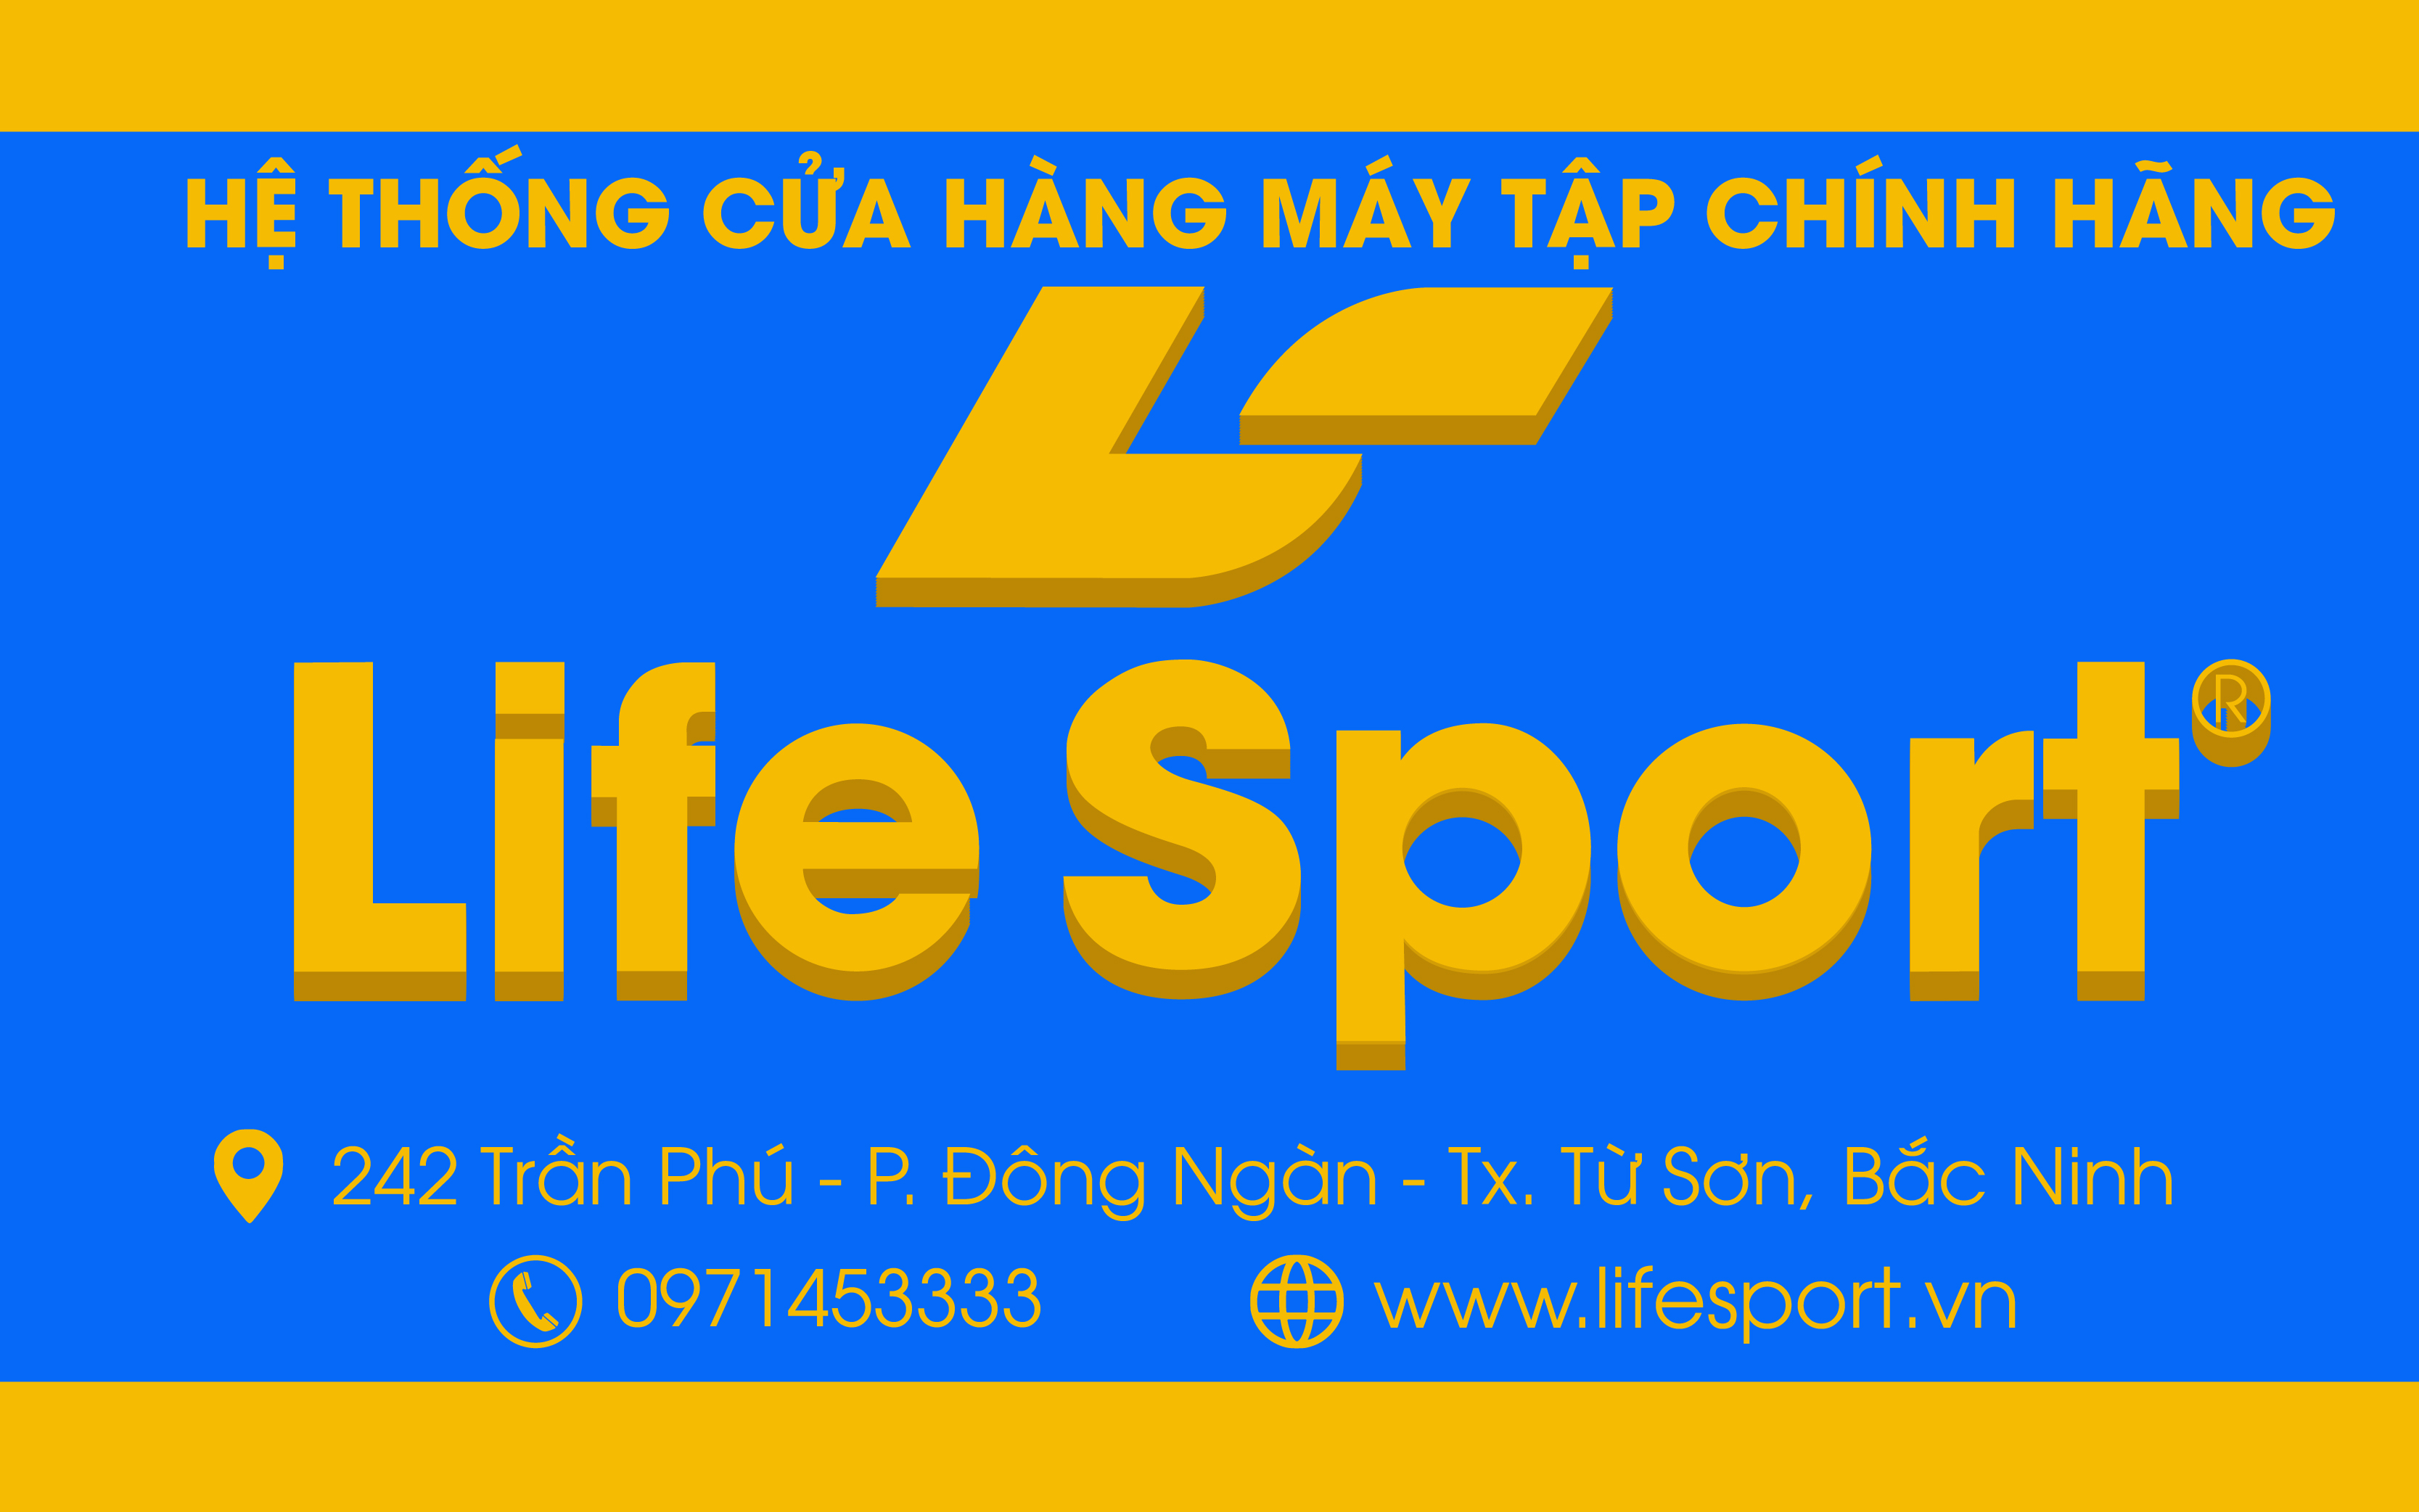 Lifesport Từ Sơn Bắc Ninh